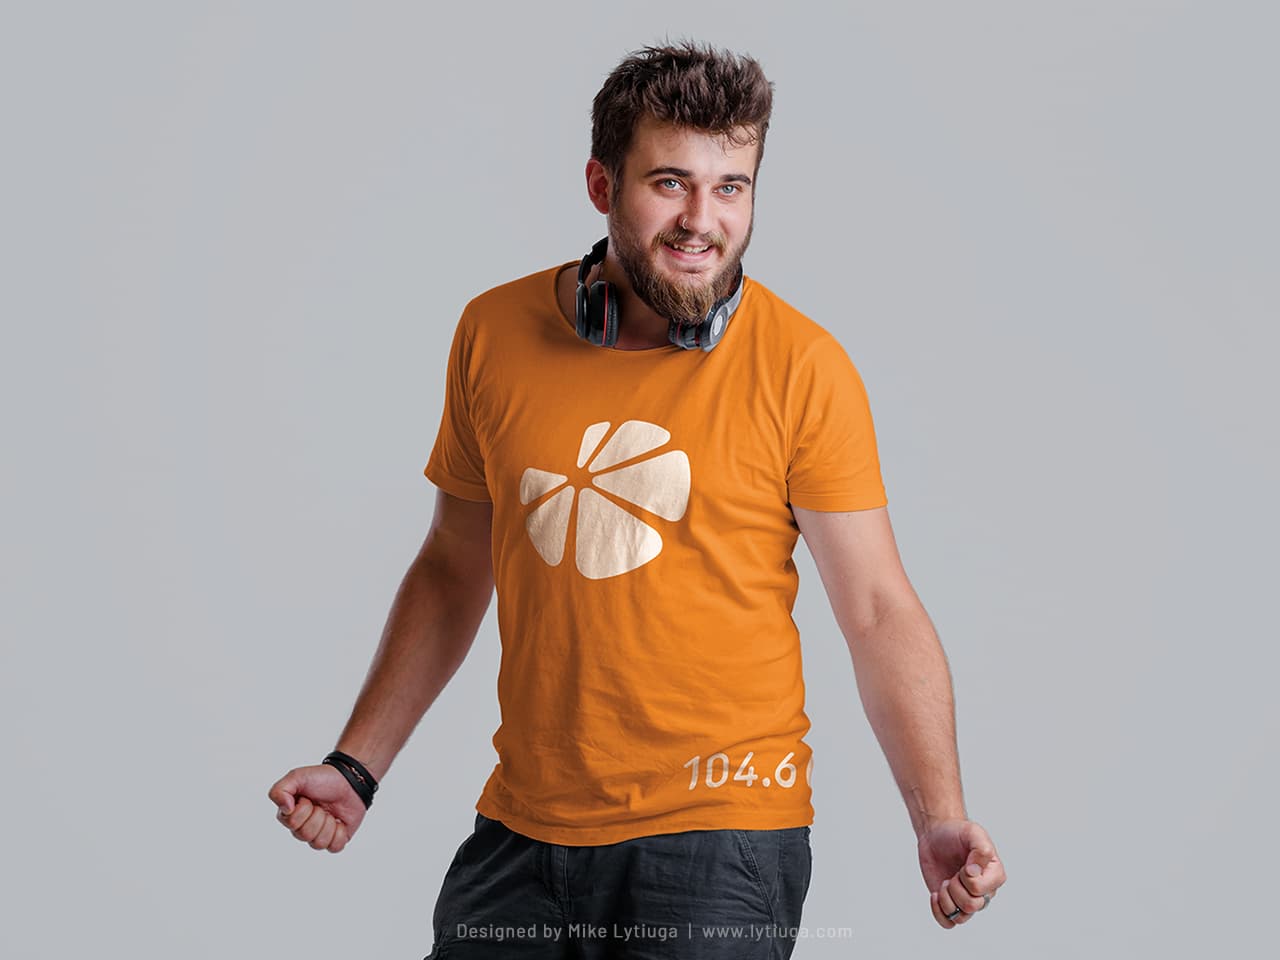 logo design & branded apparel for for Orange FM radio station